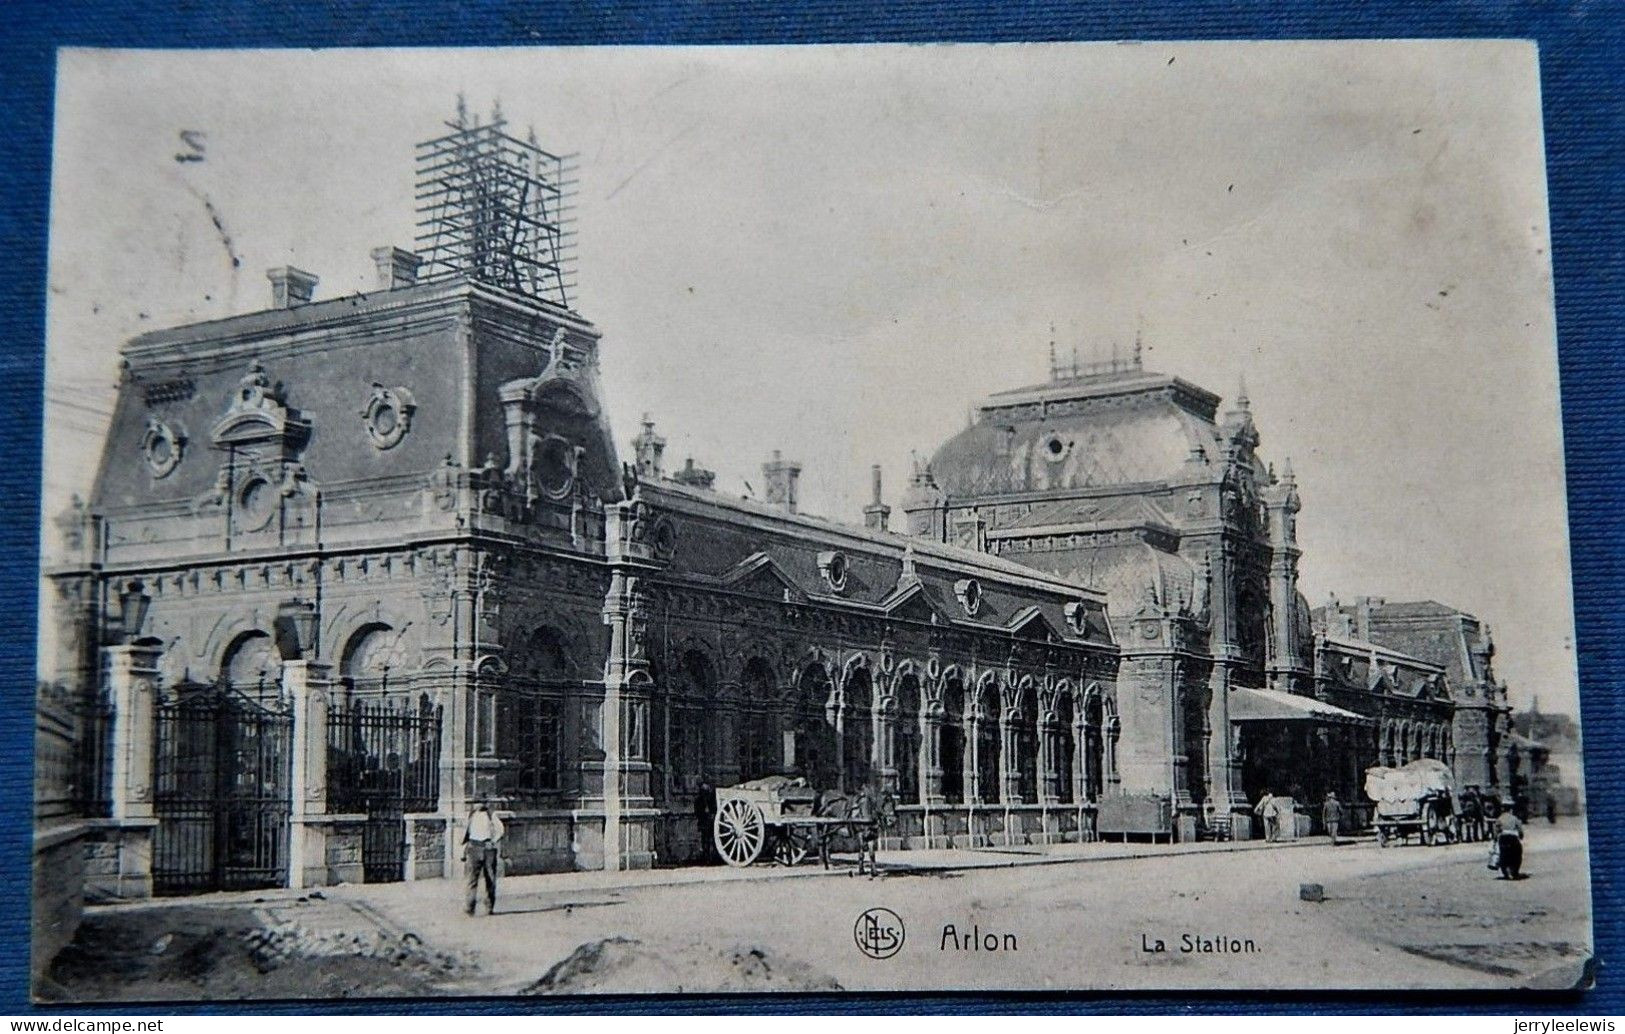 ARLON  -  La Station  -  1913 - Arlon